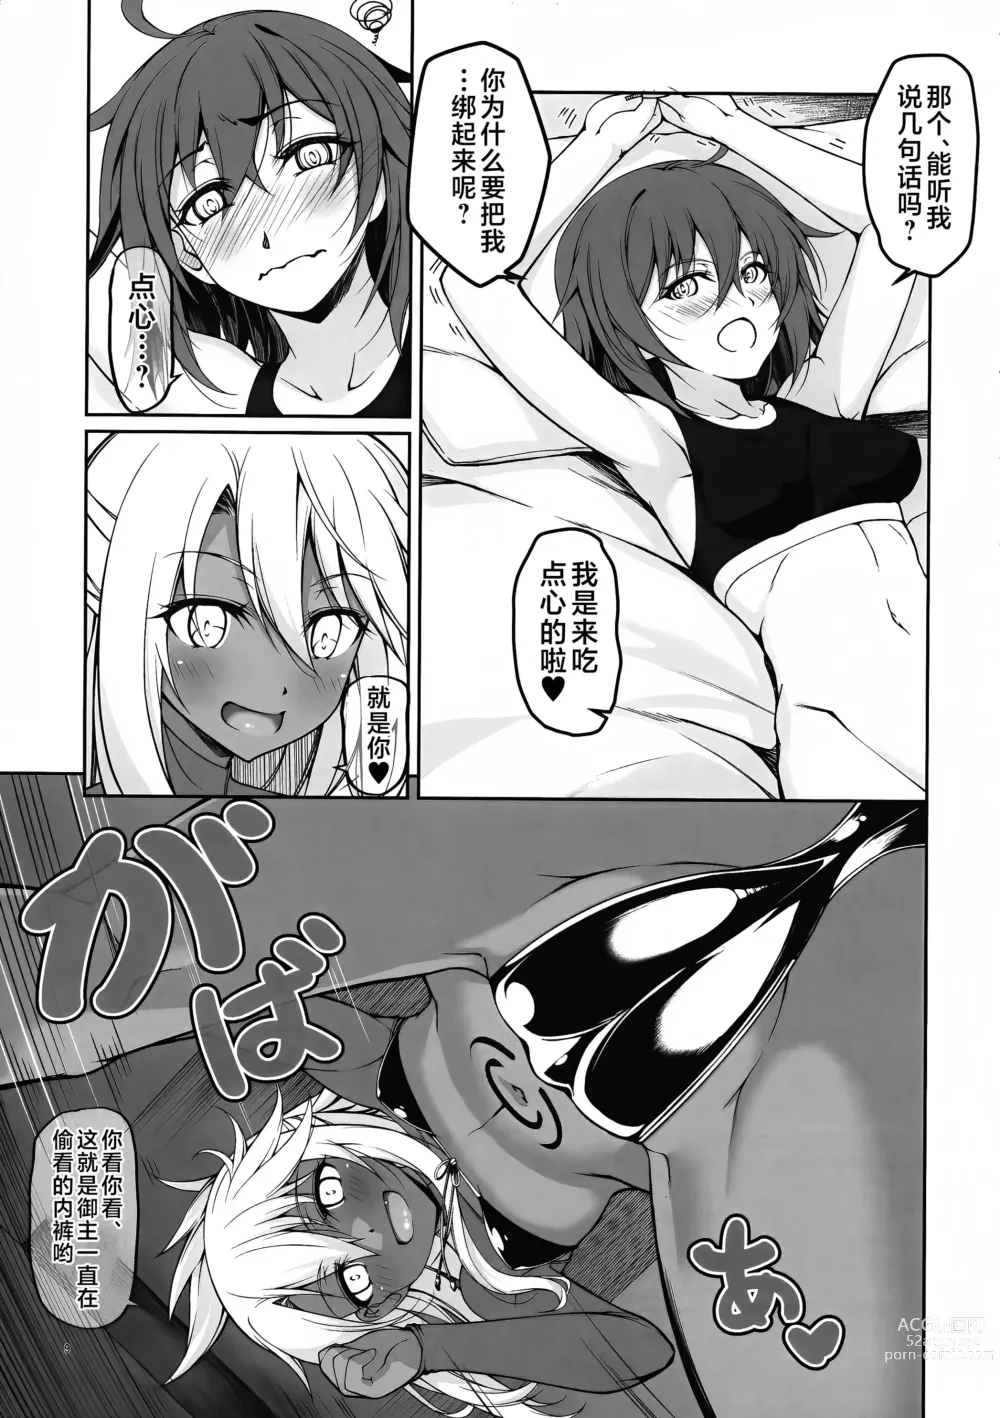 Page 9 of doujinshi SHG:09